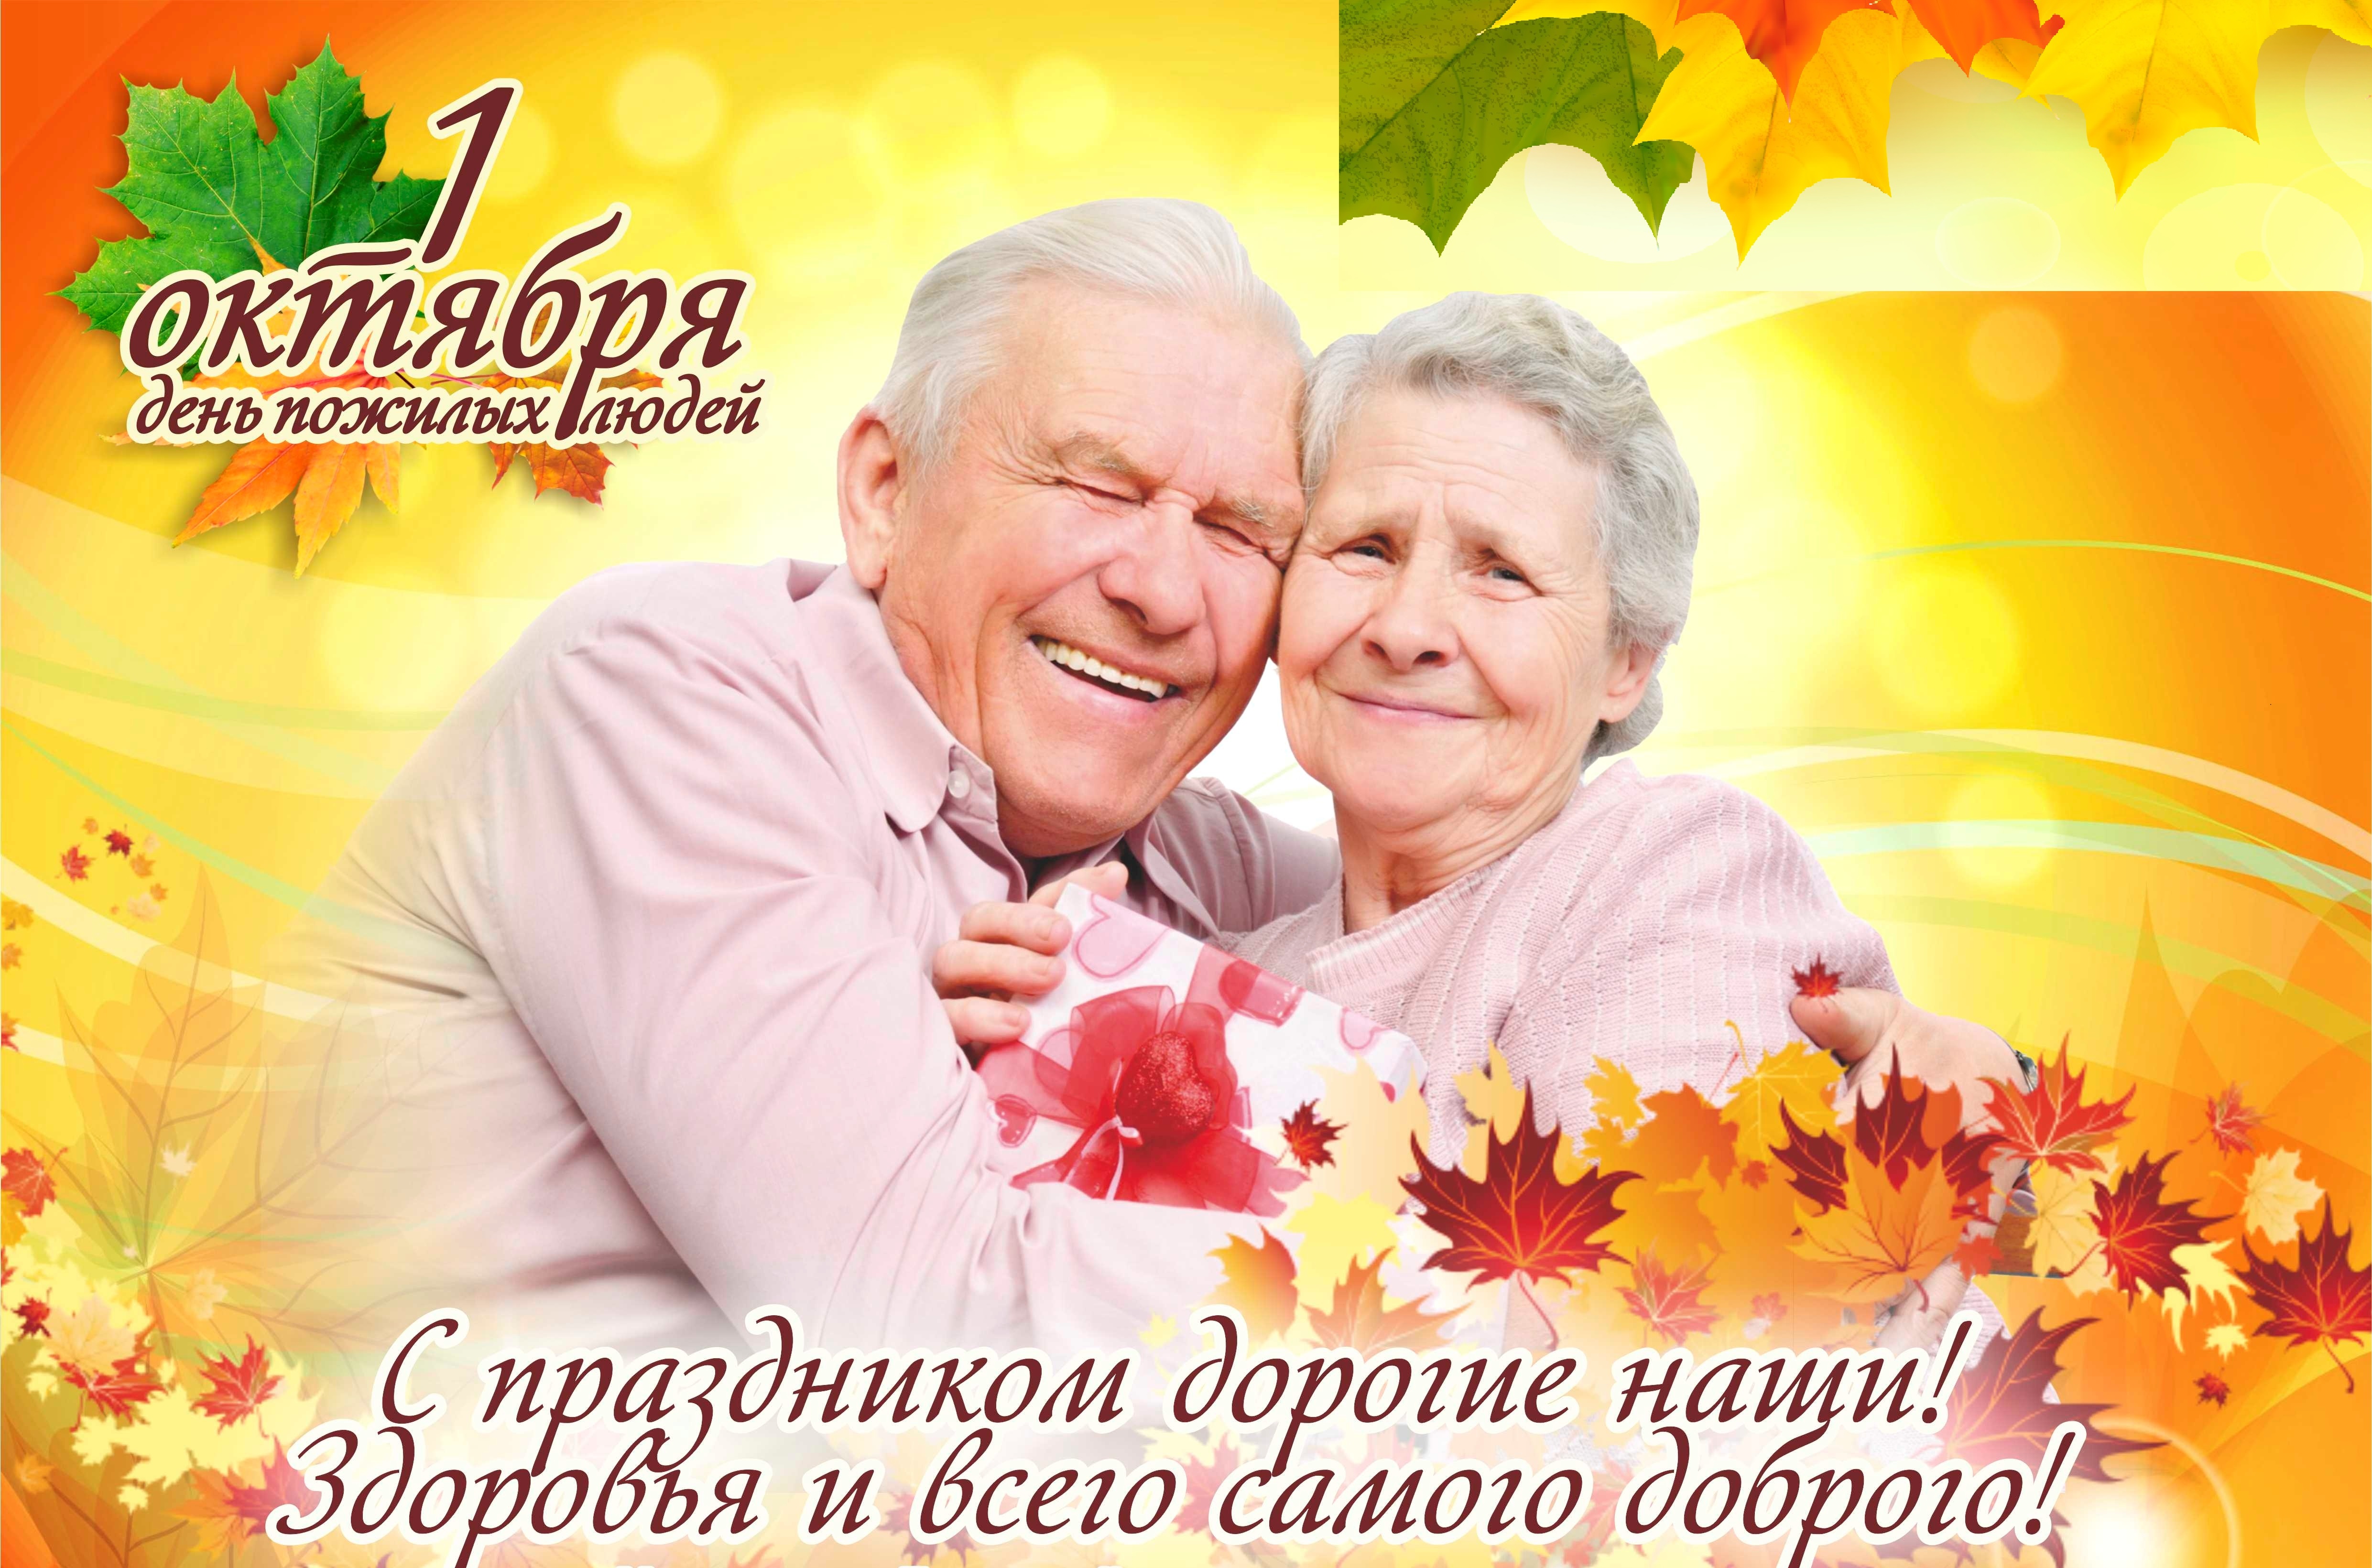 Название дню пожилого человека. День пожилых. Открытка ко Дню пожилого человека. Международный день пожилого человека. День пожилых людей 2021.